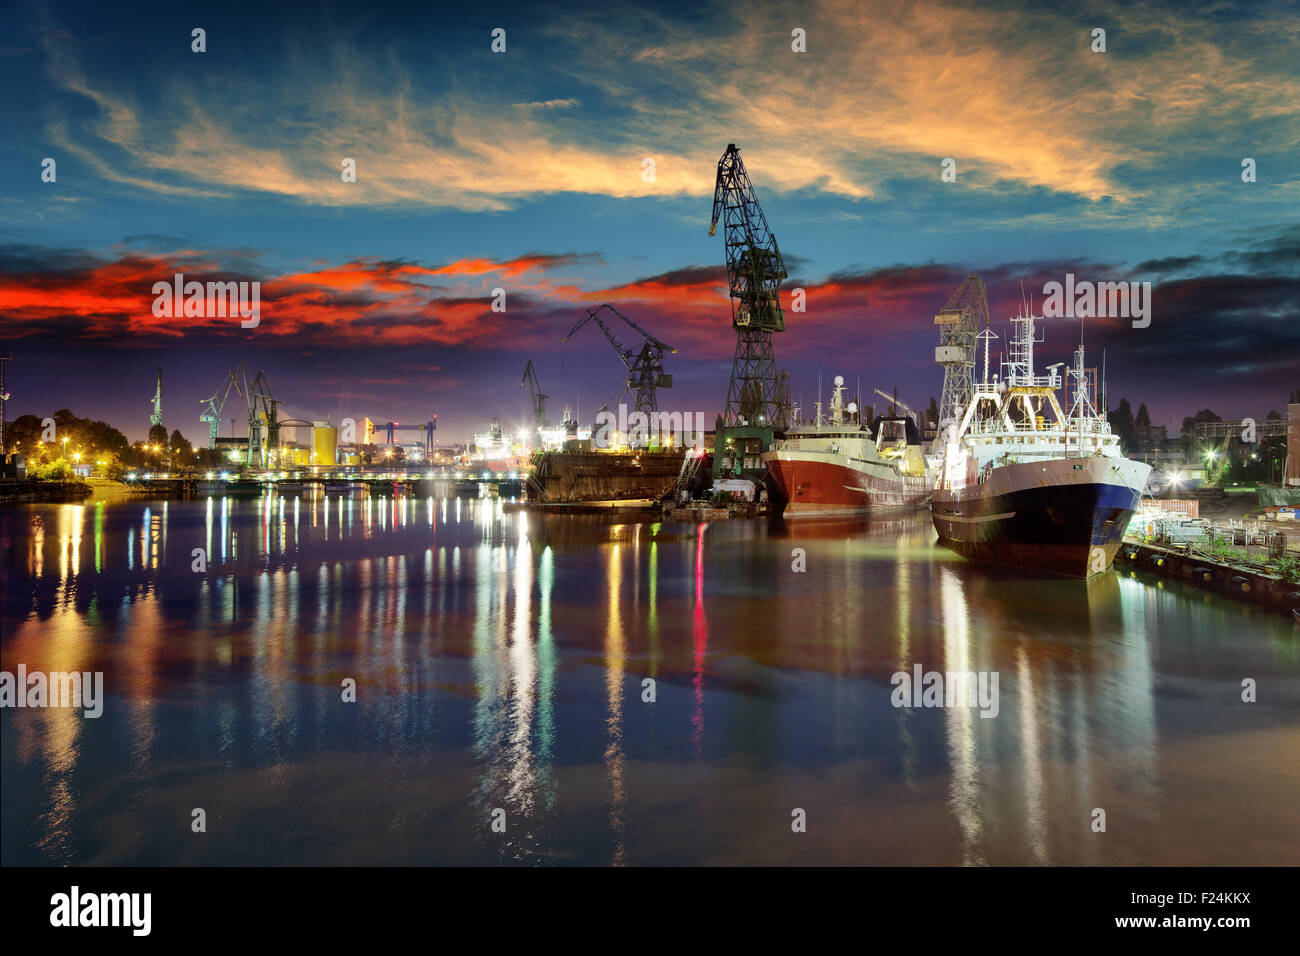 Vue sur le quai de chantier naval de Gdansk, Pologne. Banque D'Images